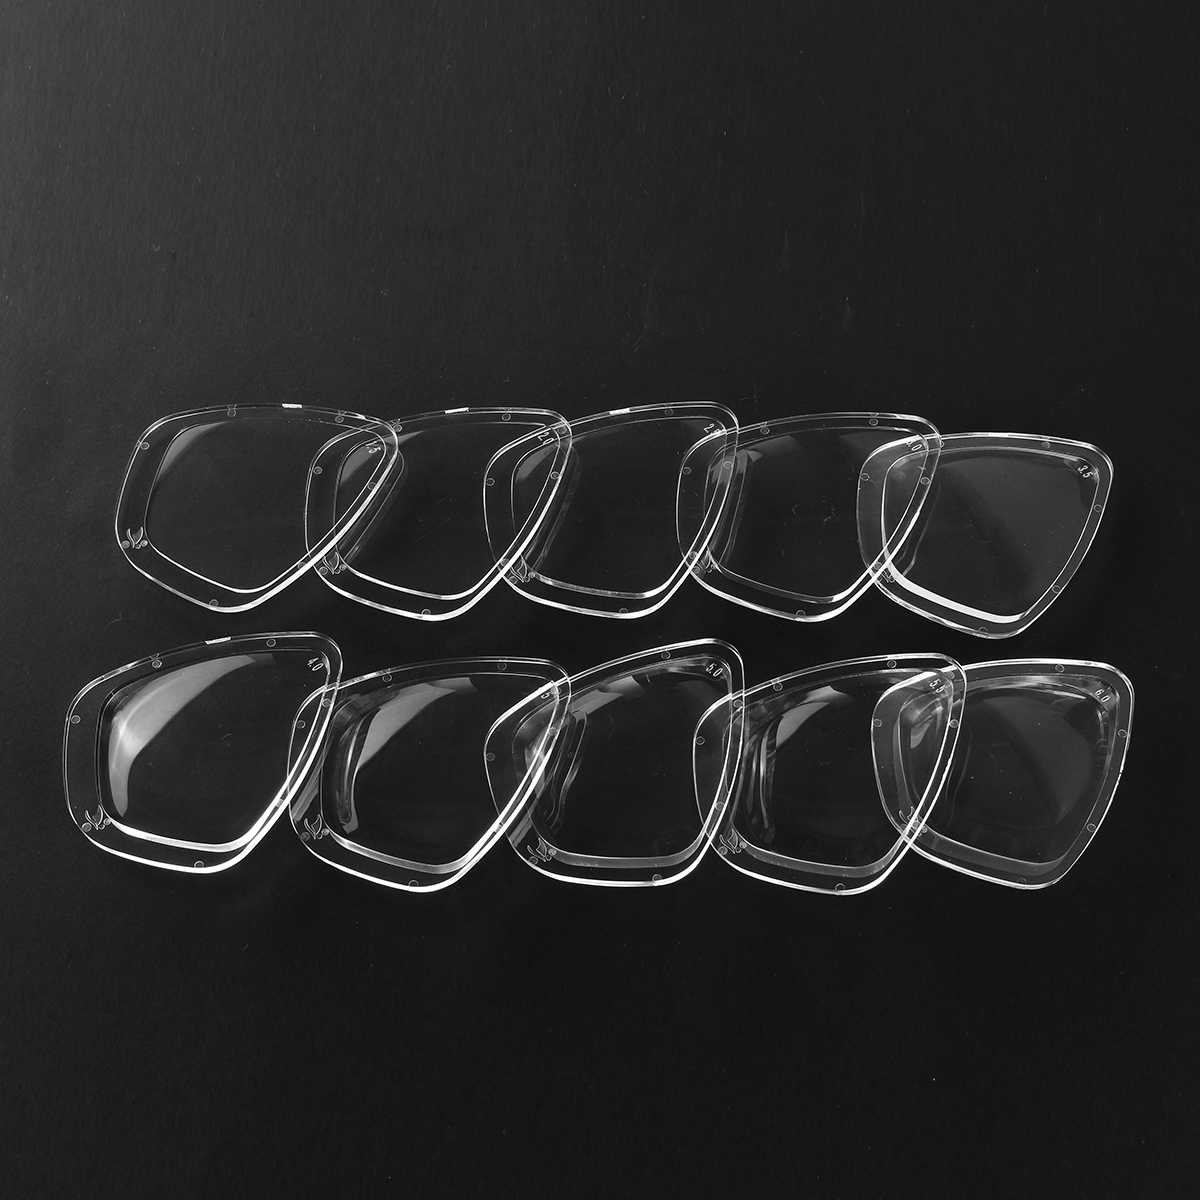 Transparent-Resin-Universal-Swimming-Diving-Shortsightedness-Glasses-Myopia-Len-Lens-1474744-2